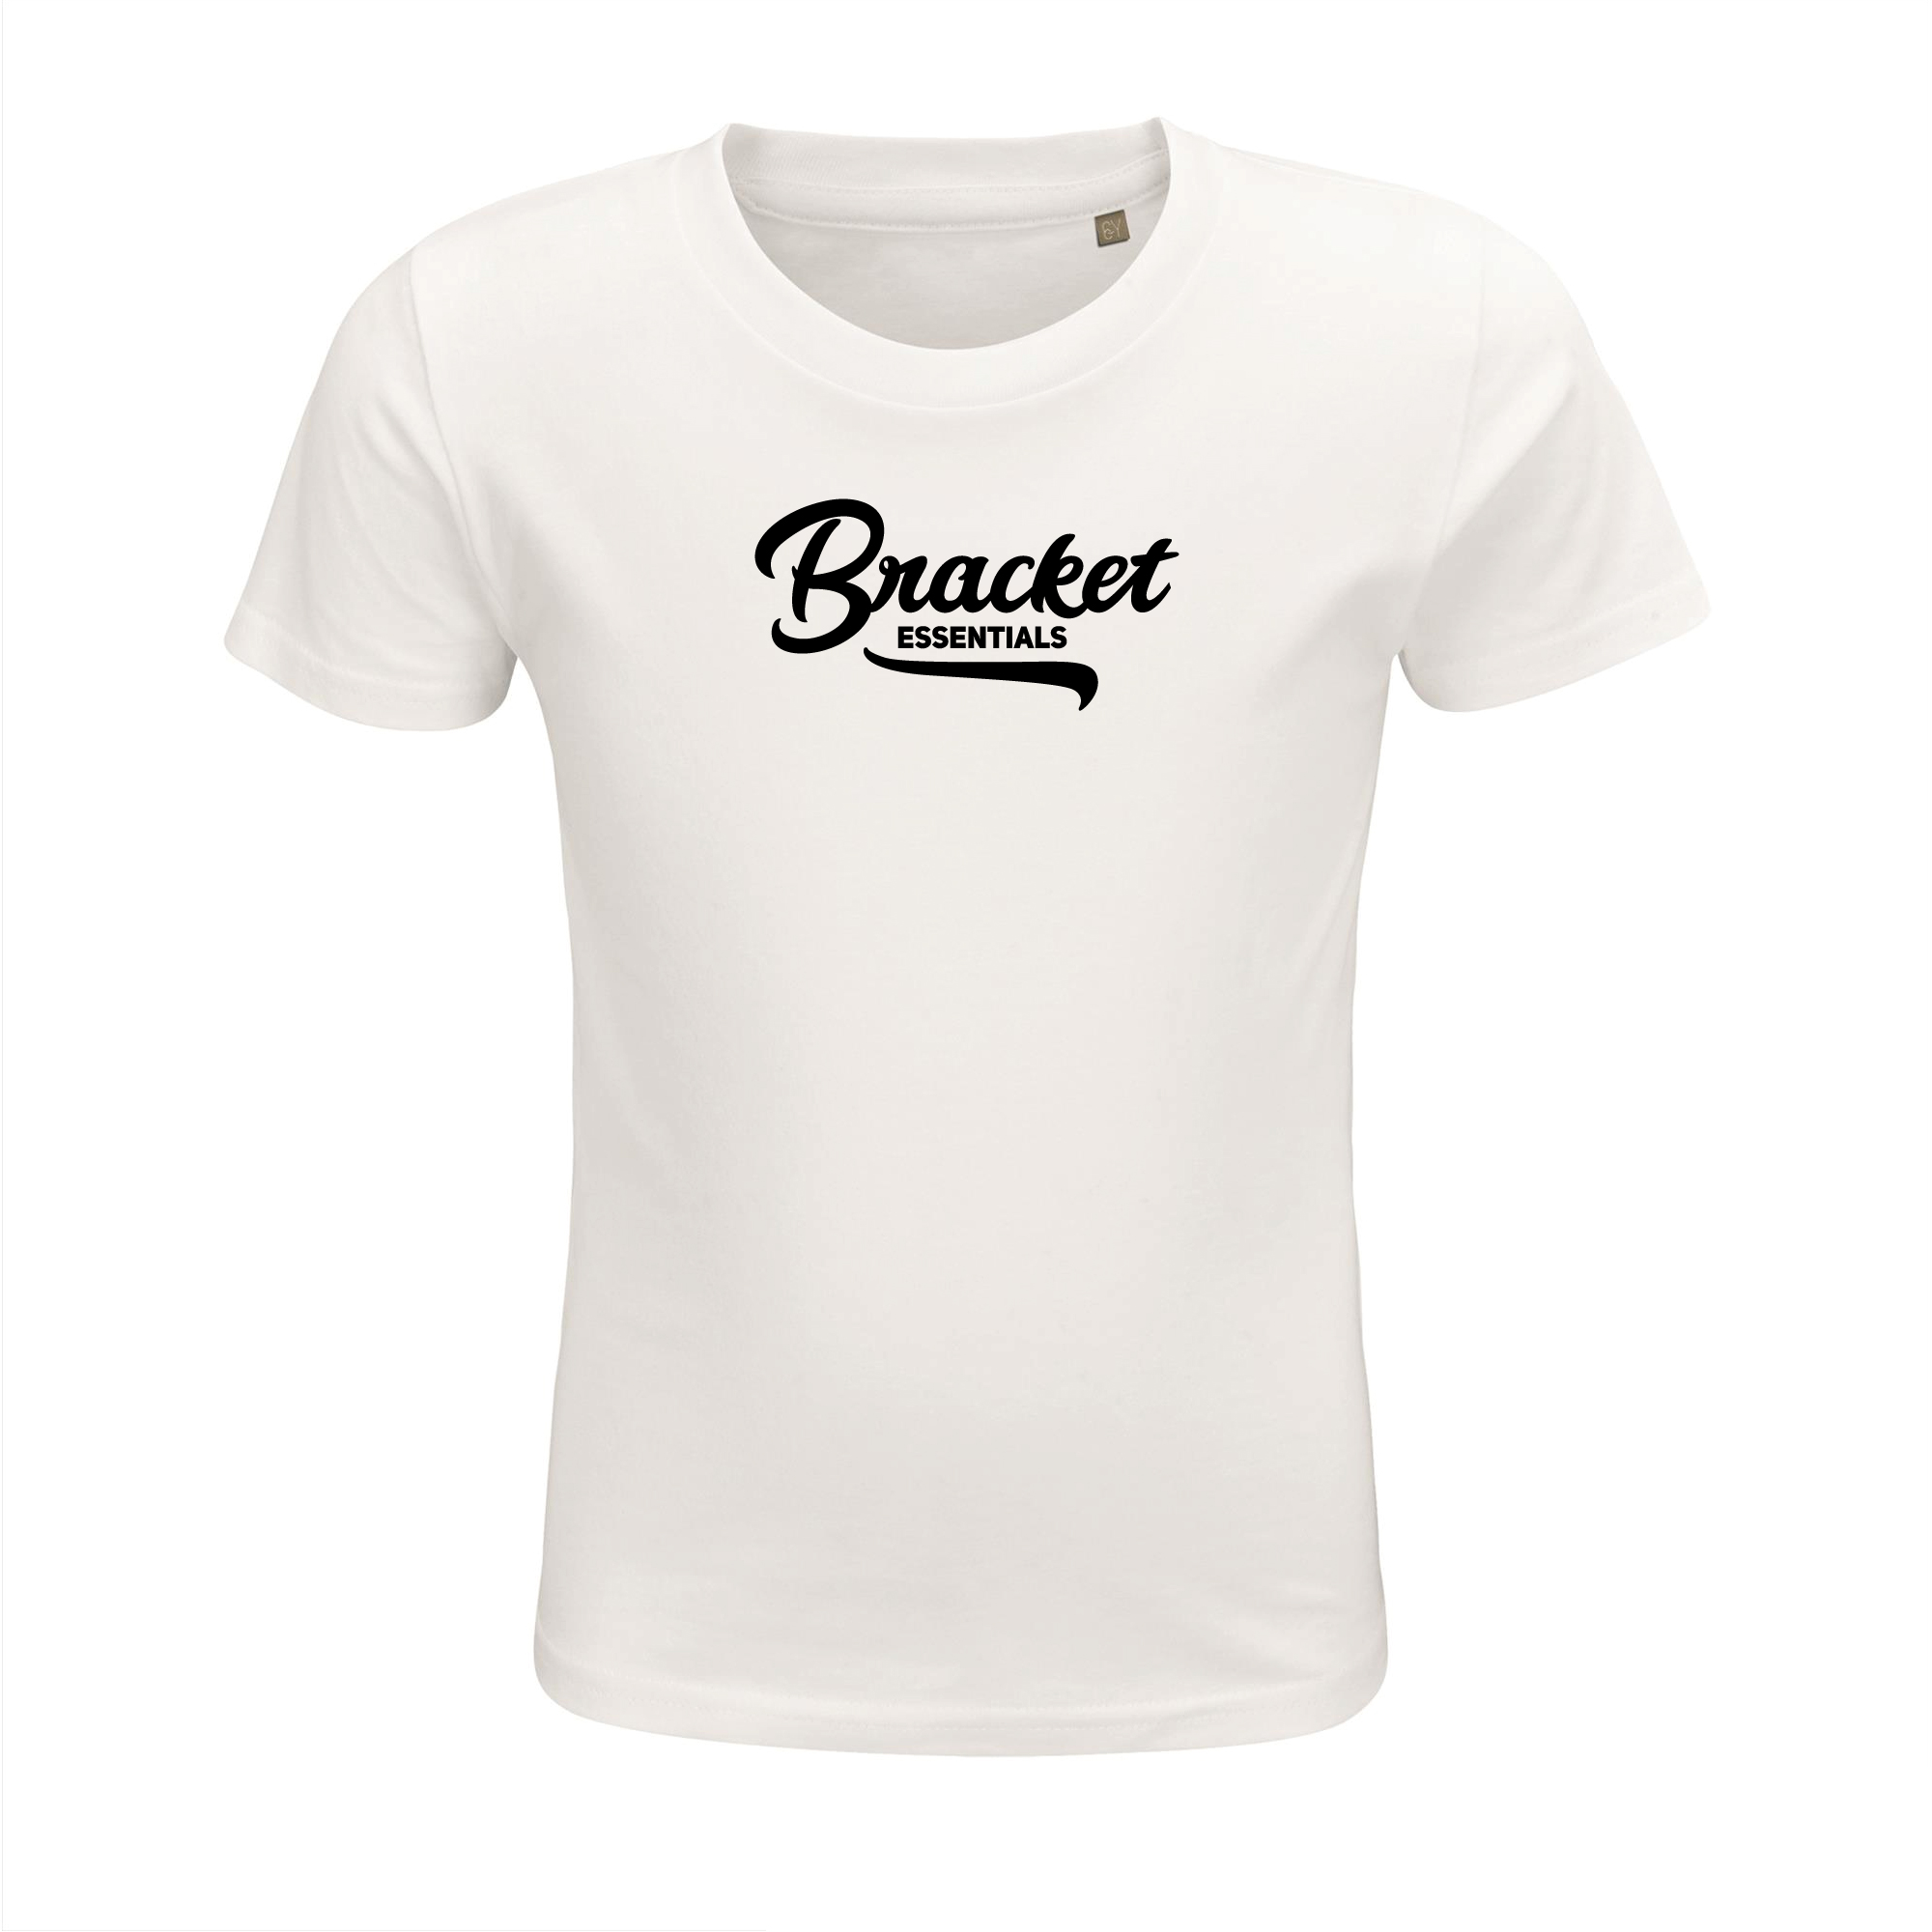 Bracket kinder T-shirt Wit tekst - Bracket official